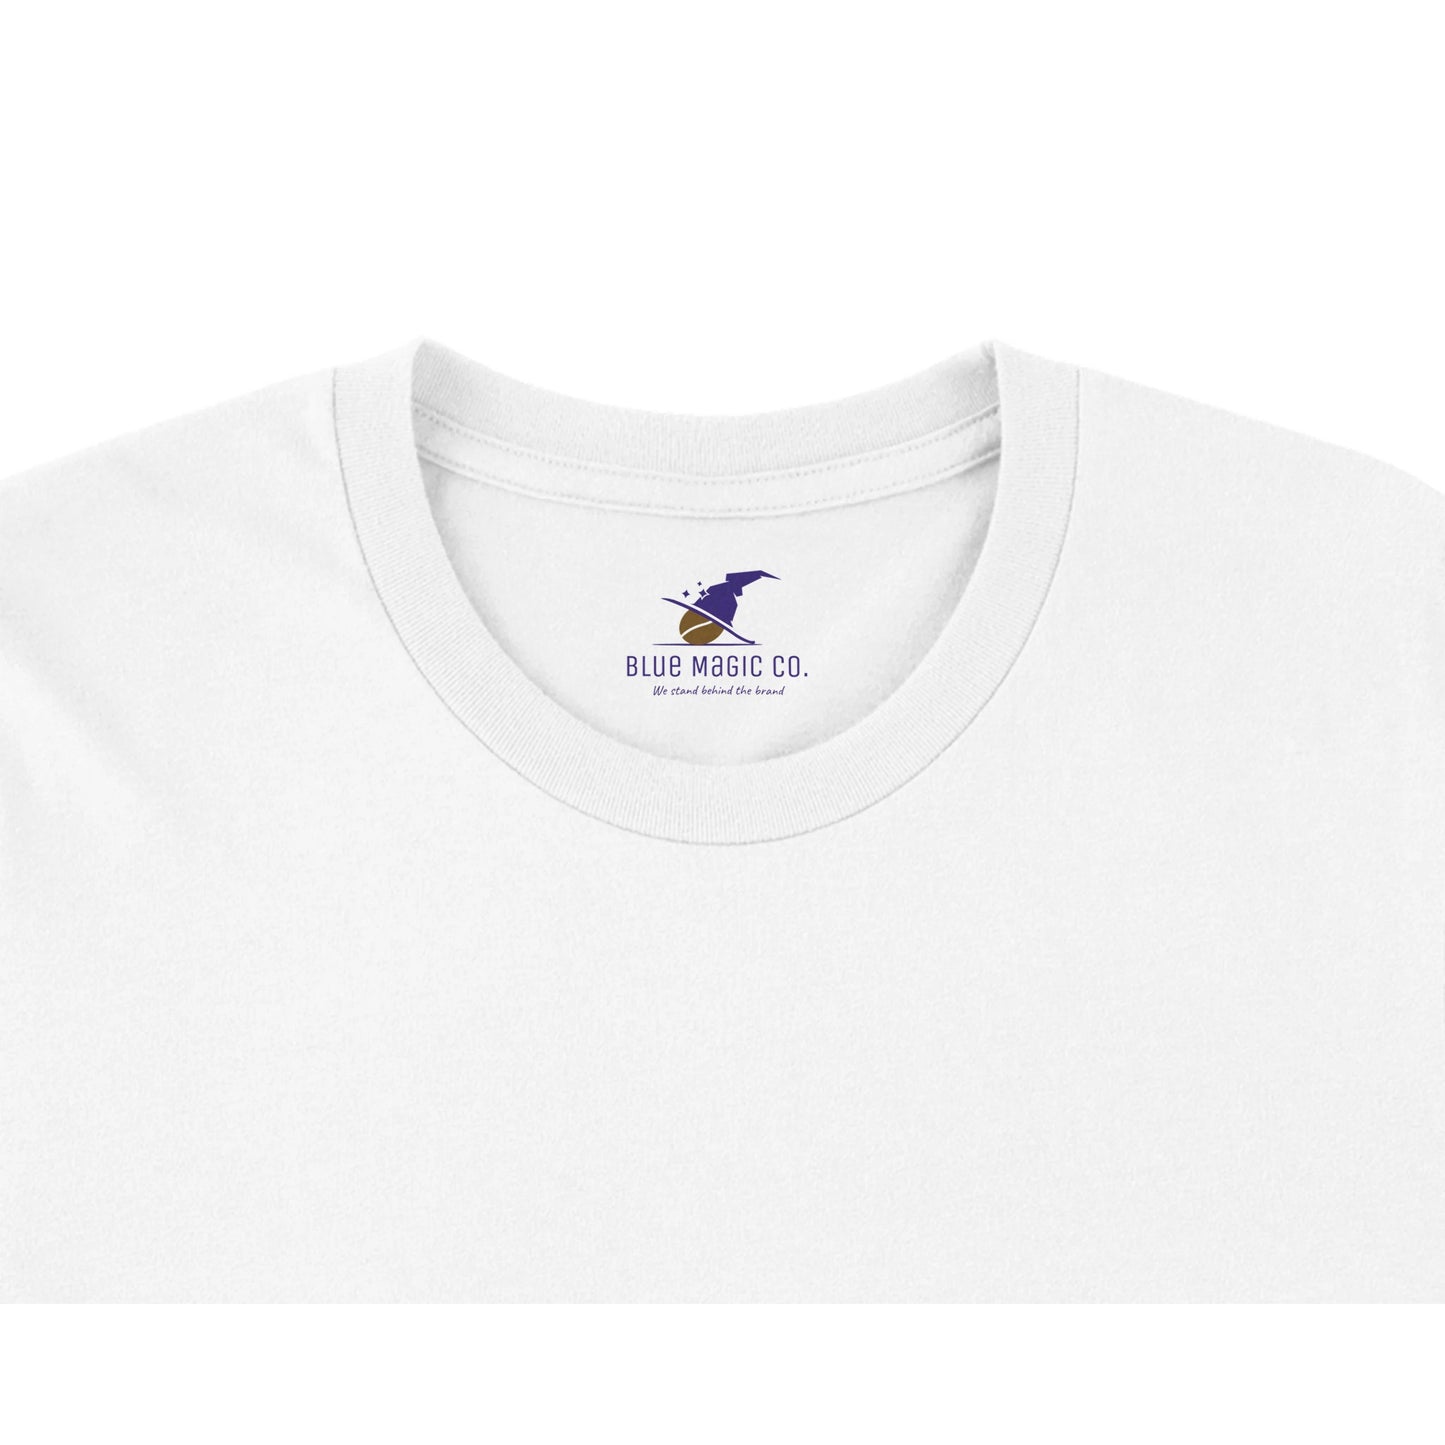 Premium Unisex "Less Depresso" T-shirt